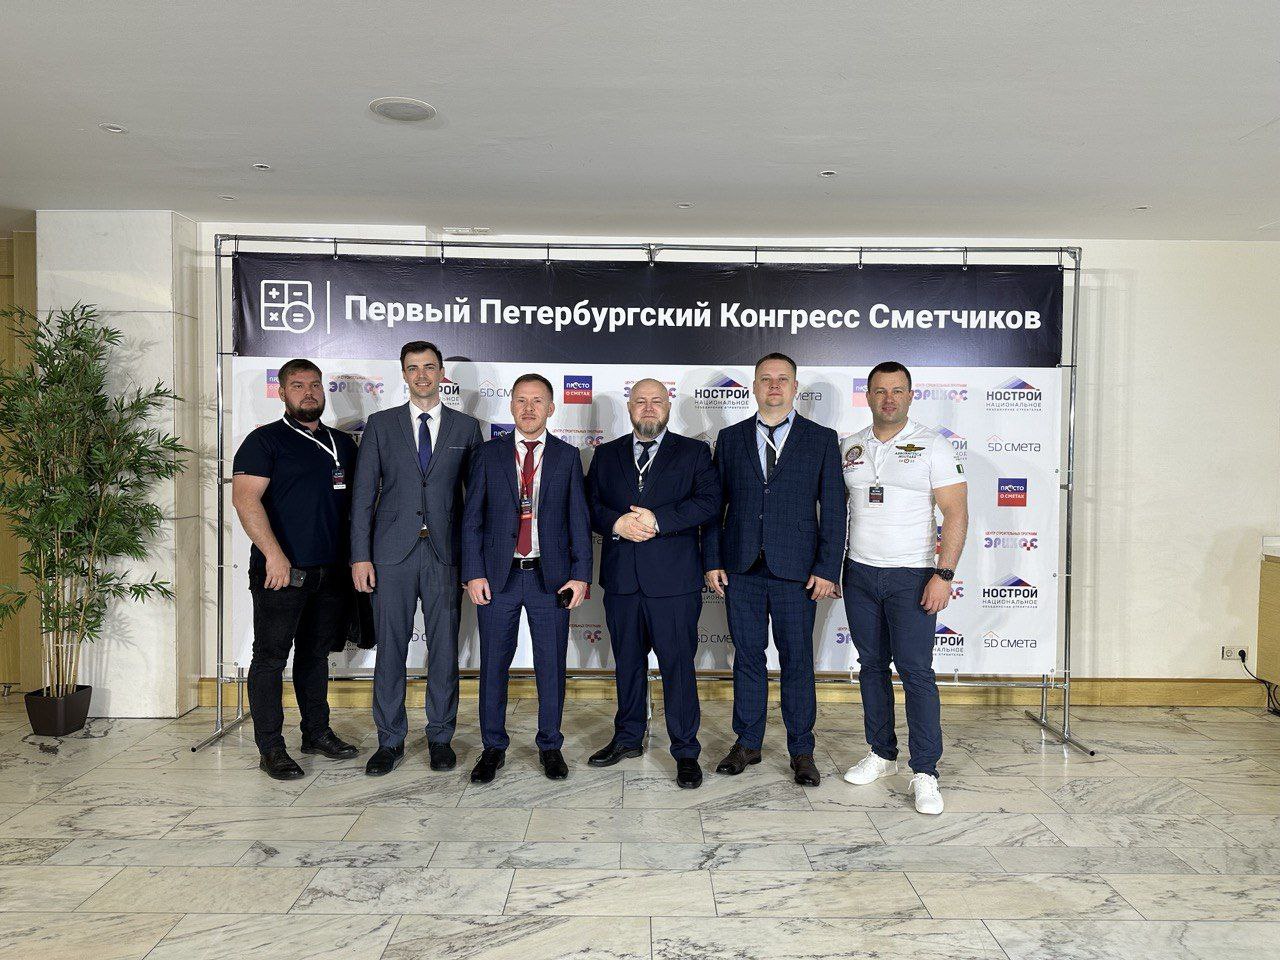 Главный специалист дирекции Ассоциации В.А.Гришанов (второй слева) и участники Конгресса.